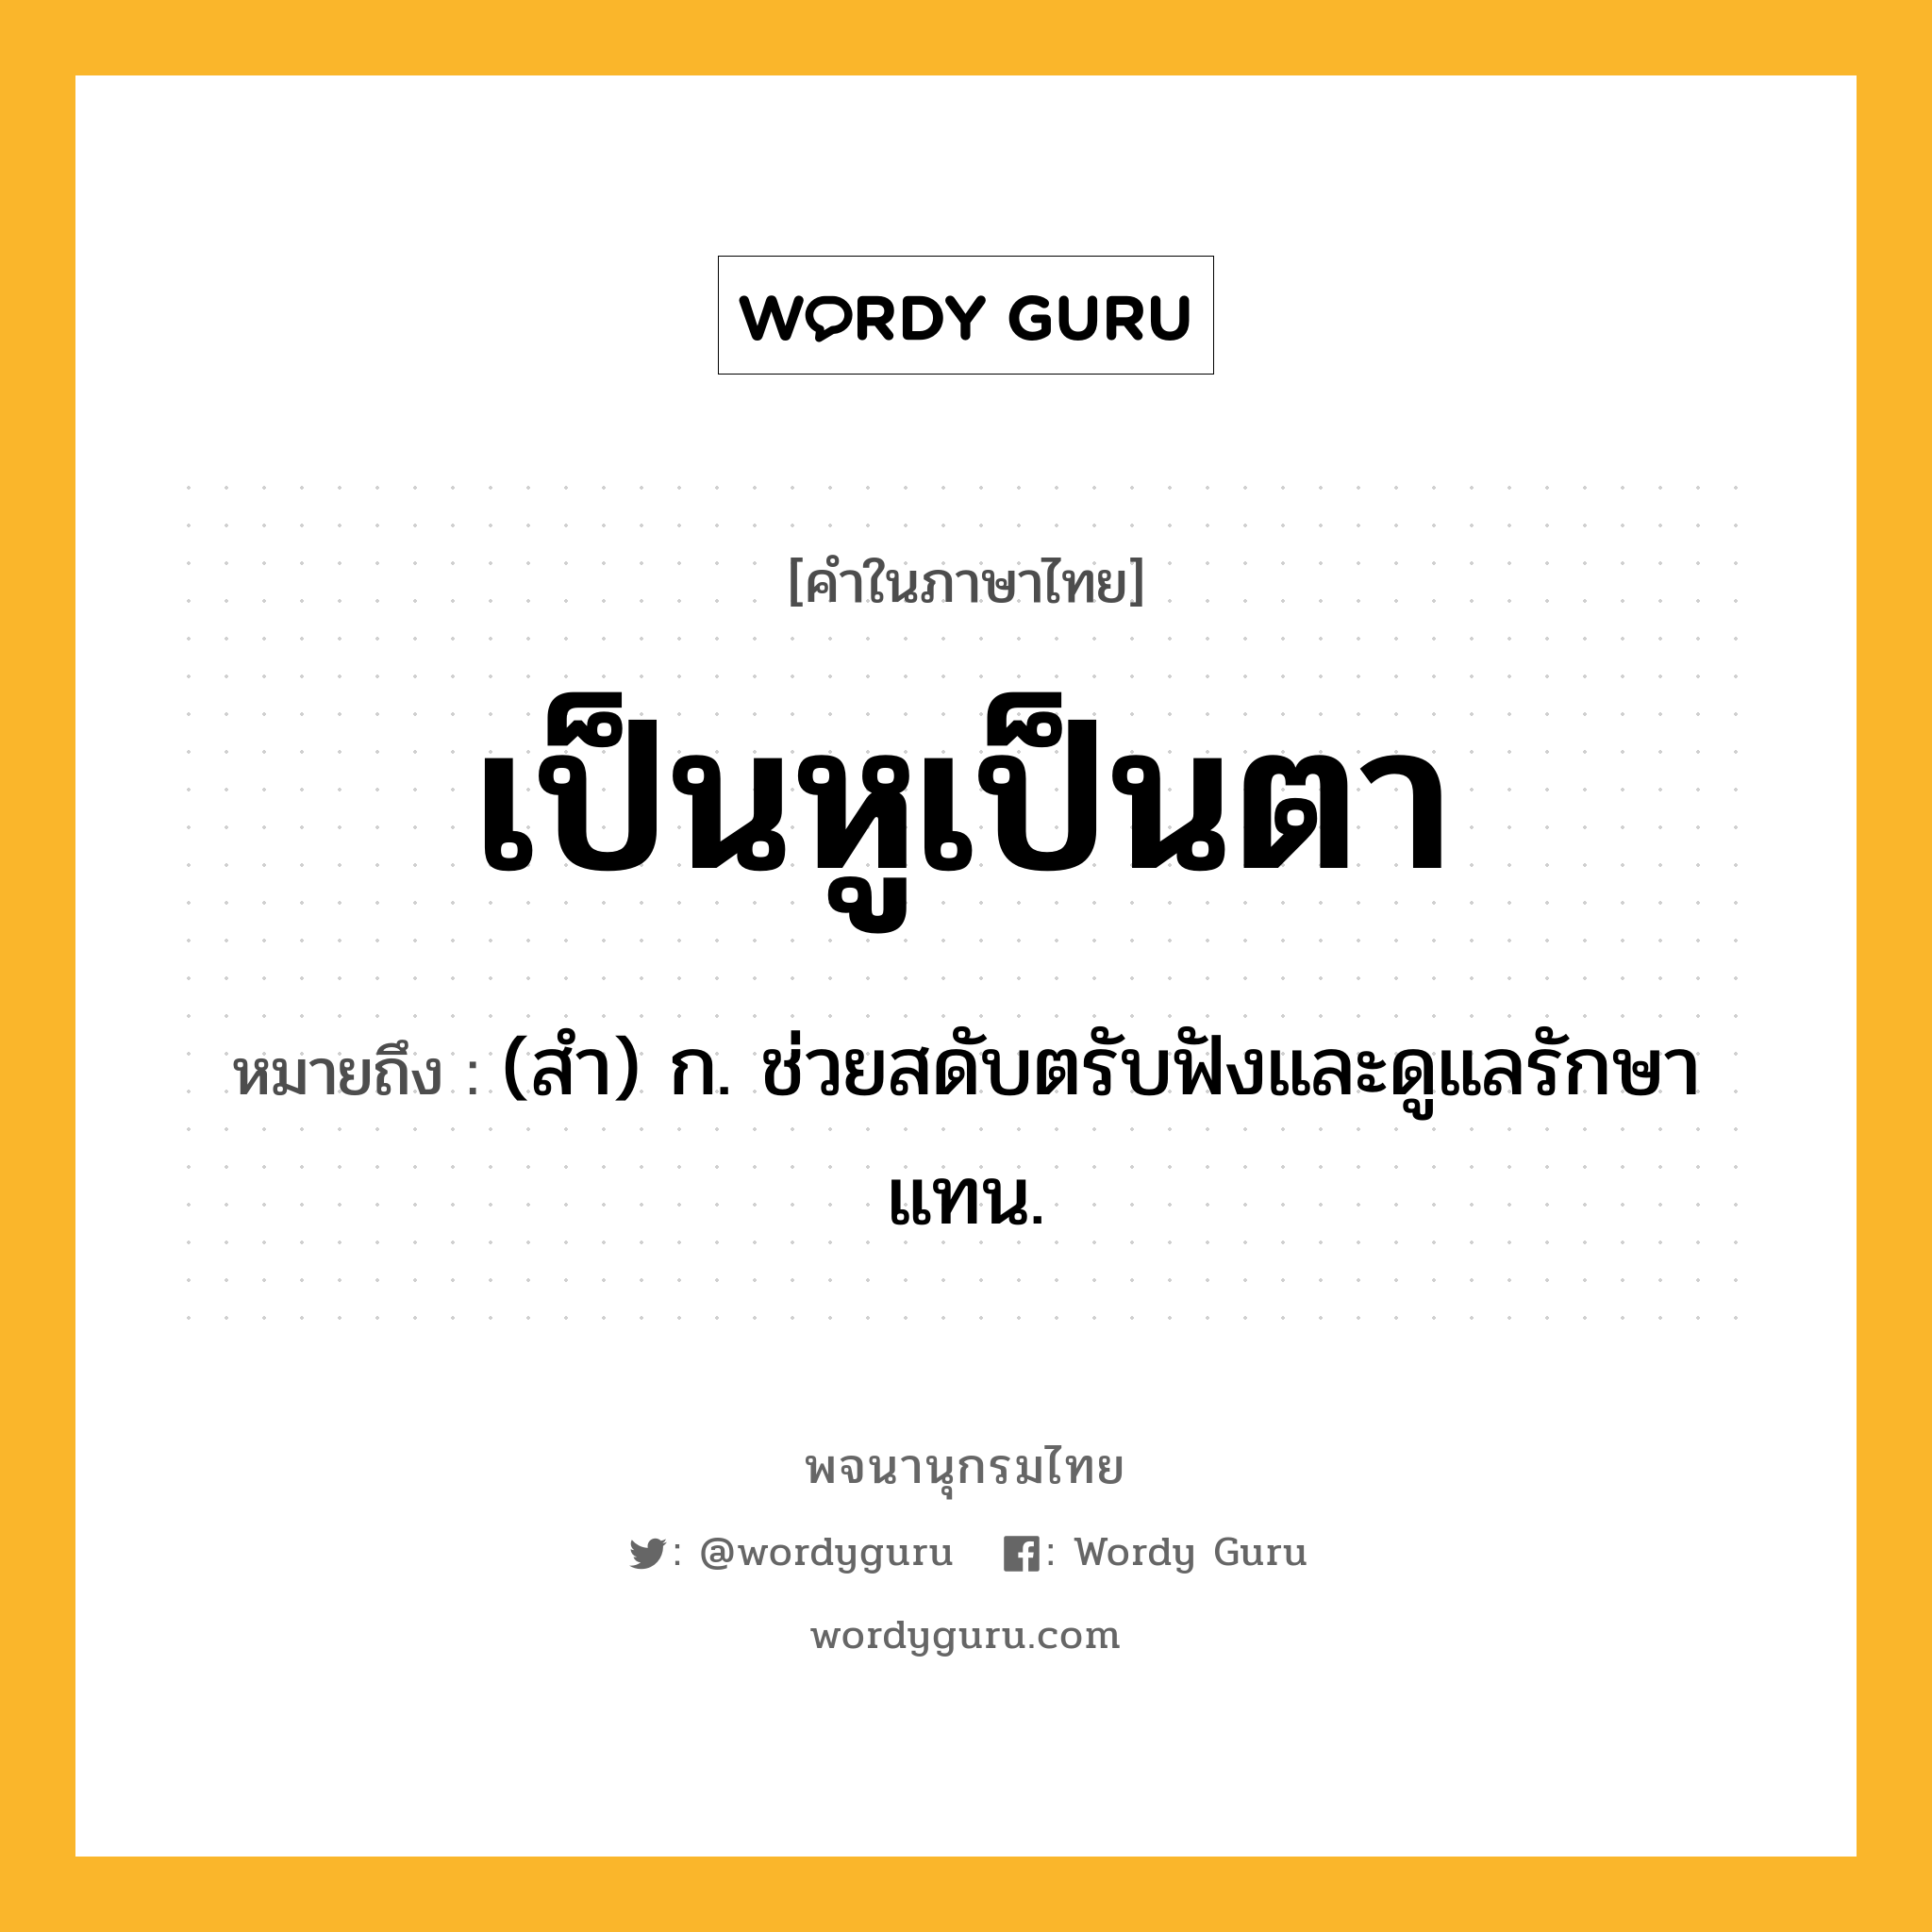 เป็นหูเป็นตา ความหมาย หมายถึงอะไร?, คำในภาษาไทย เป็นหูเป็นตา หมายถึง (สํา) ก. ช่วยสดับตรับฟังและดูแลรักษาแทน.